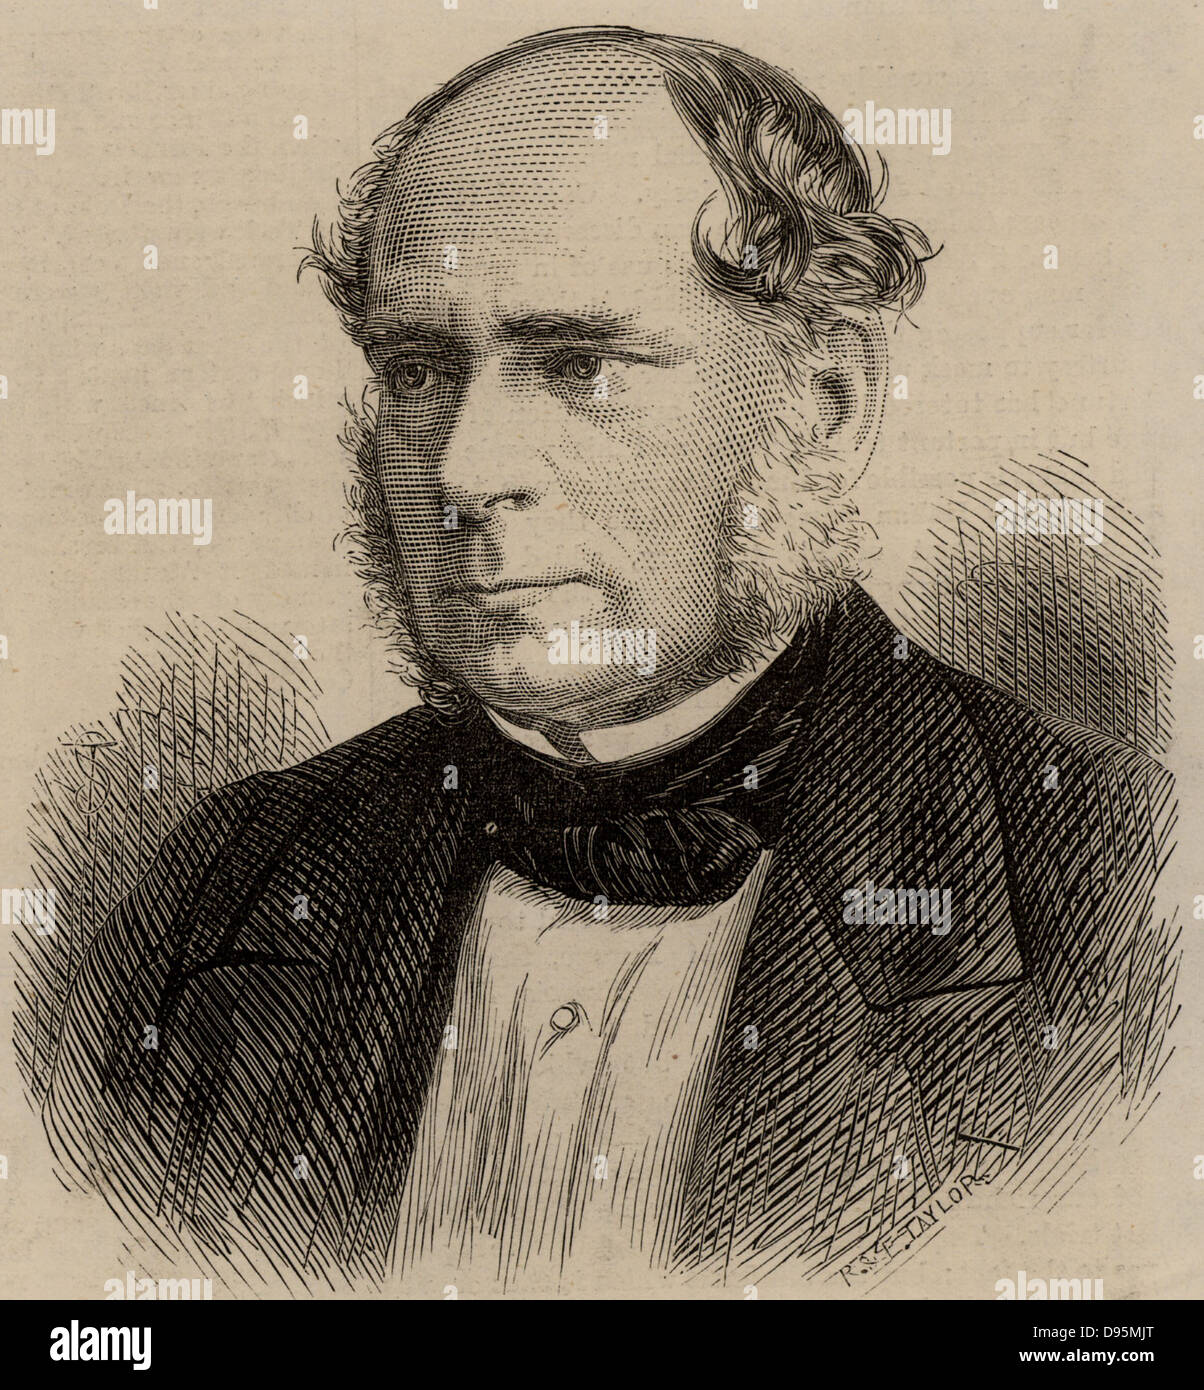 Henry Bessemer (1813-1893) ingénieur civil anglais, inventeur et industriel.  Parmi ses inventions ont été le processus d'acier Bessemer et le  convertisseur Bessemer. Gravure, 1875 Photo Stock - Alamy